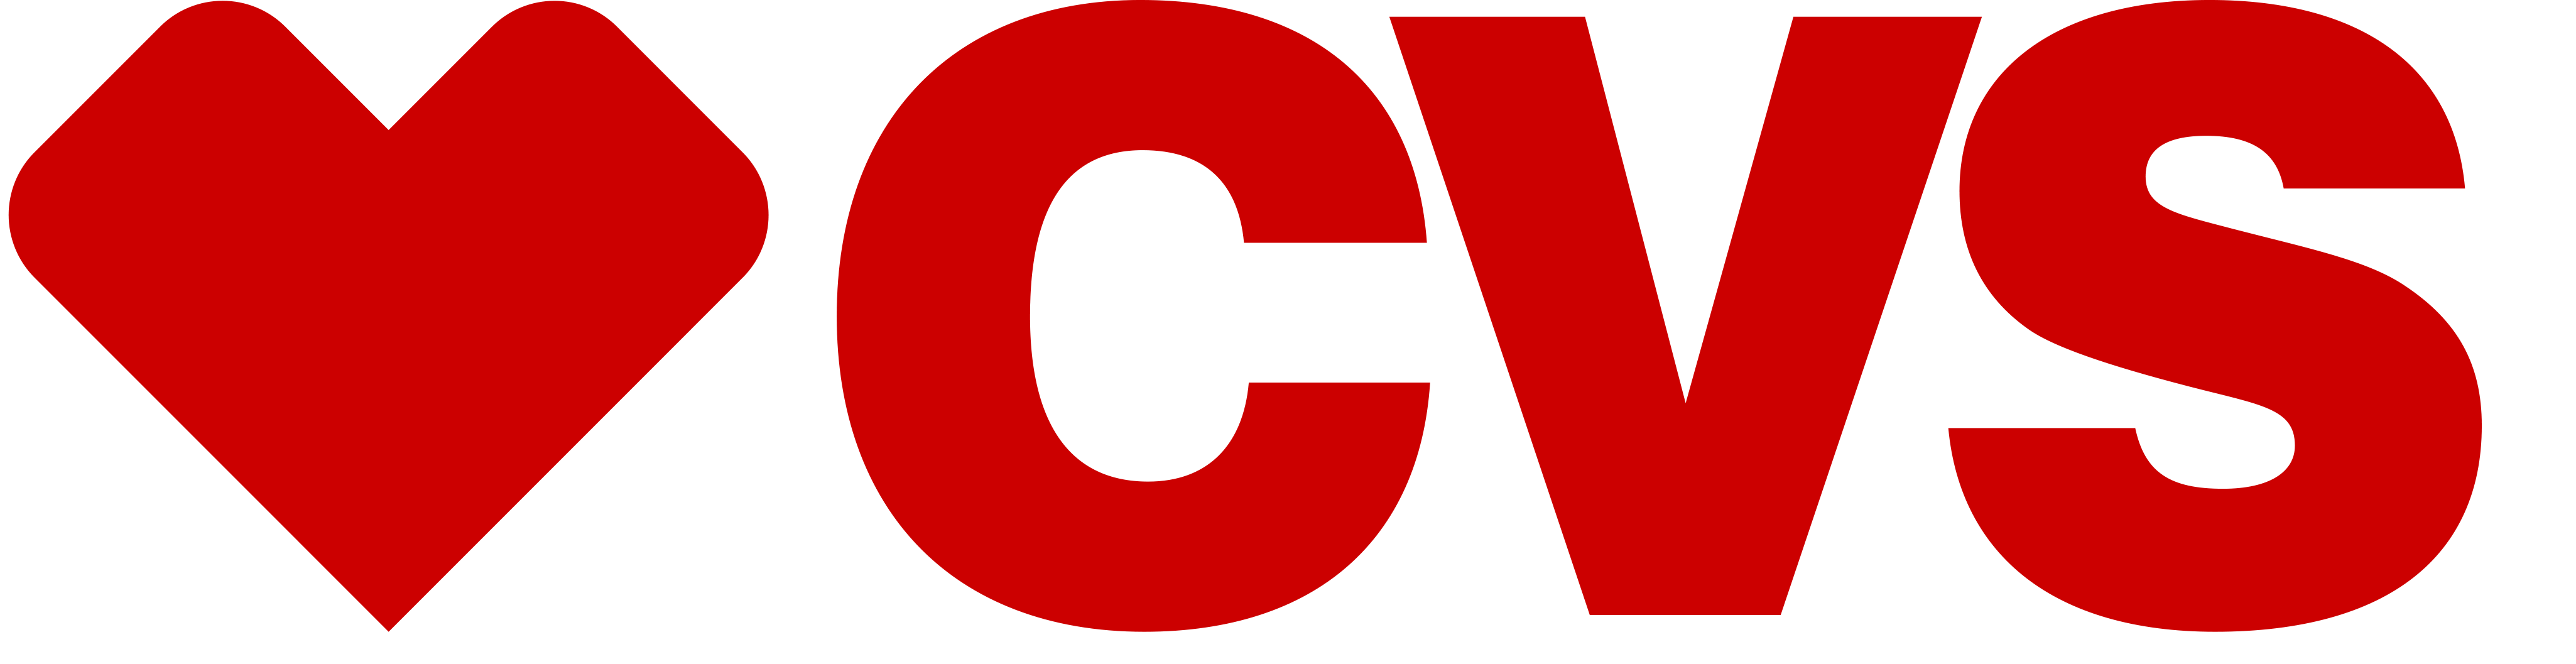 cvs logos